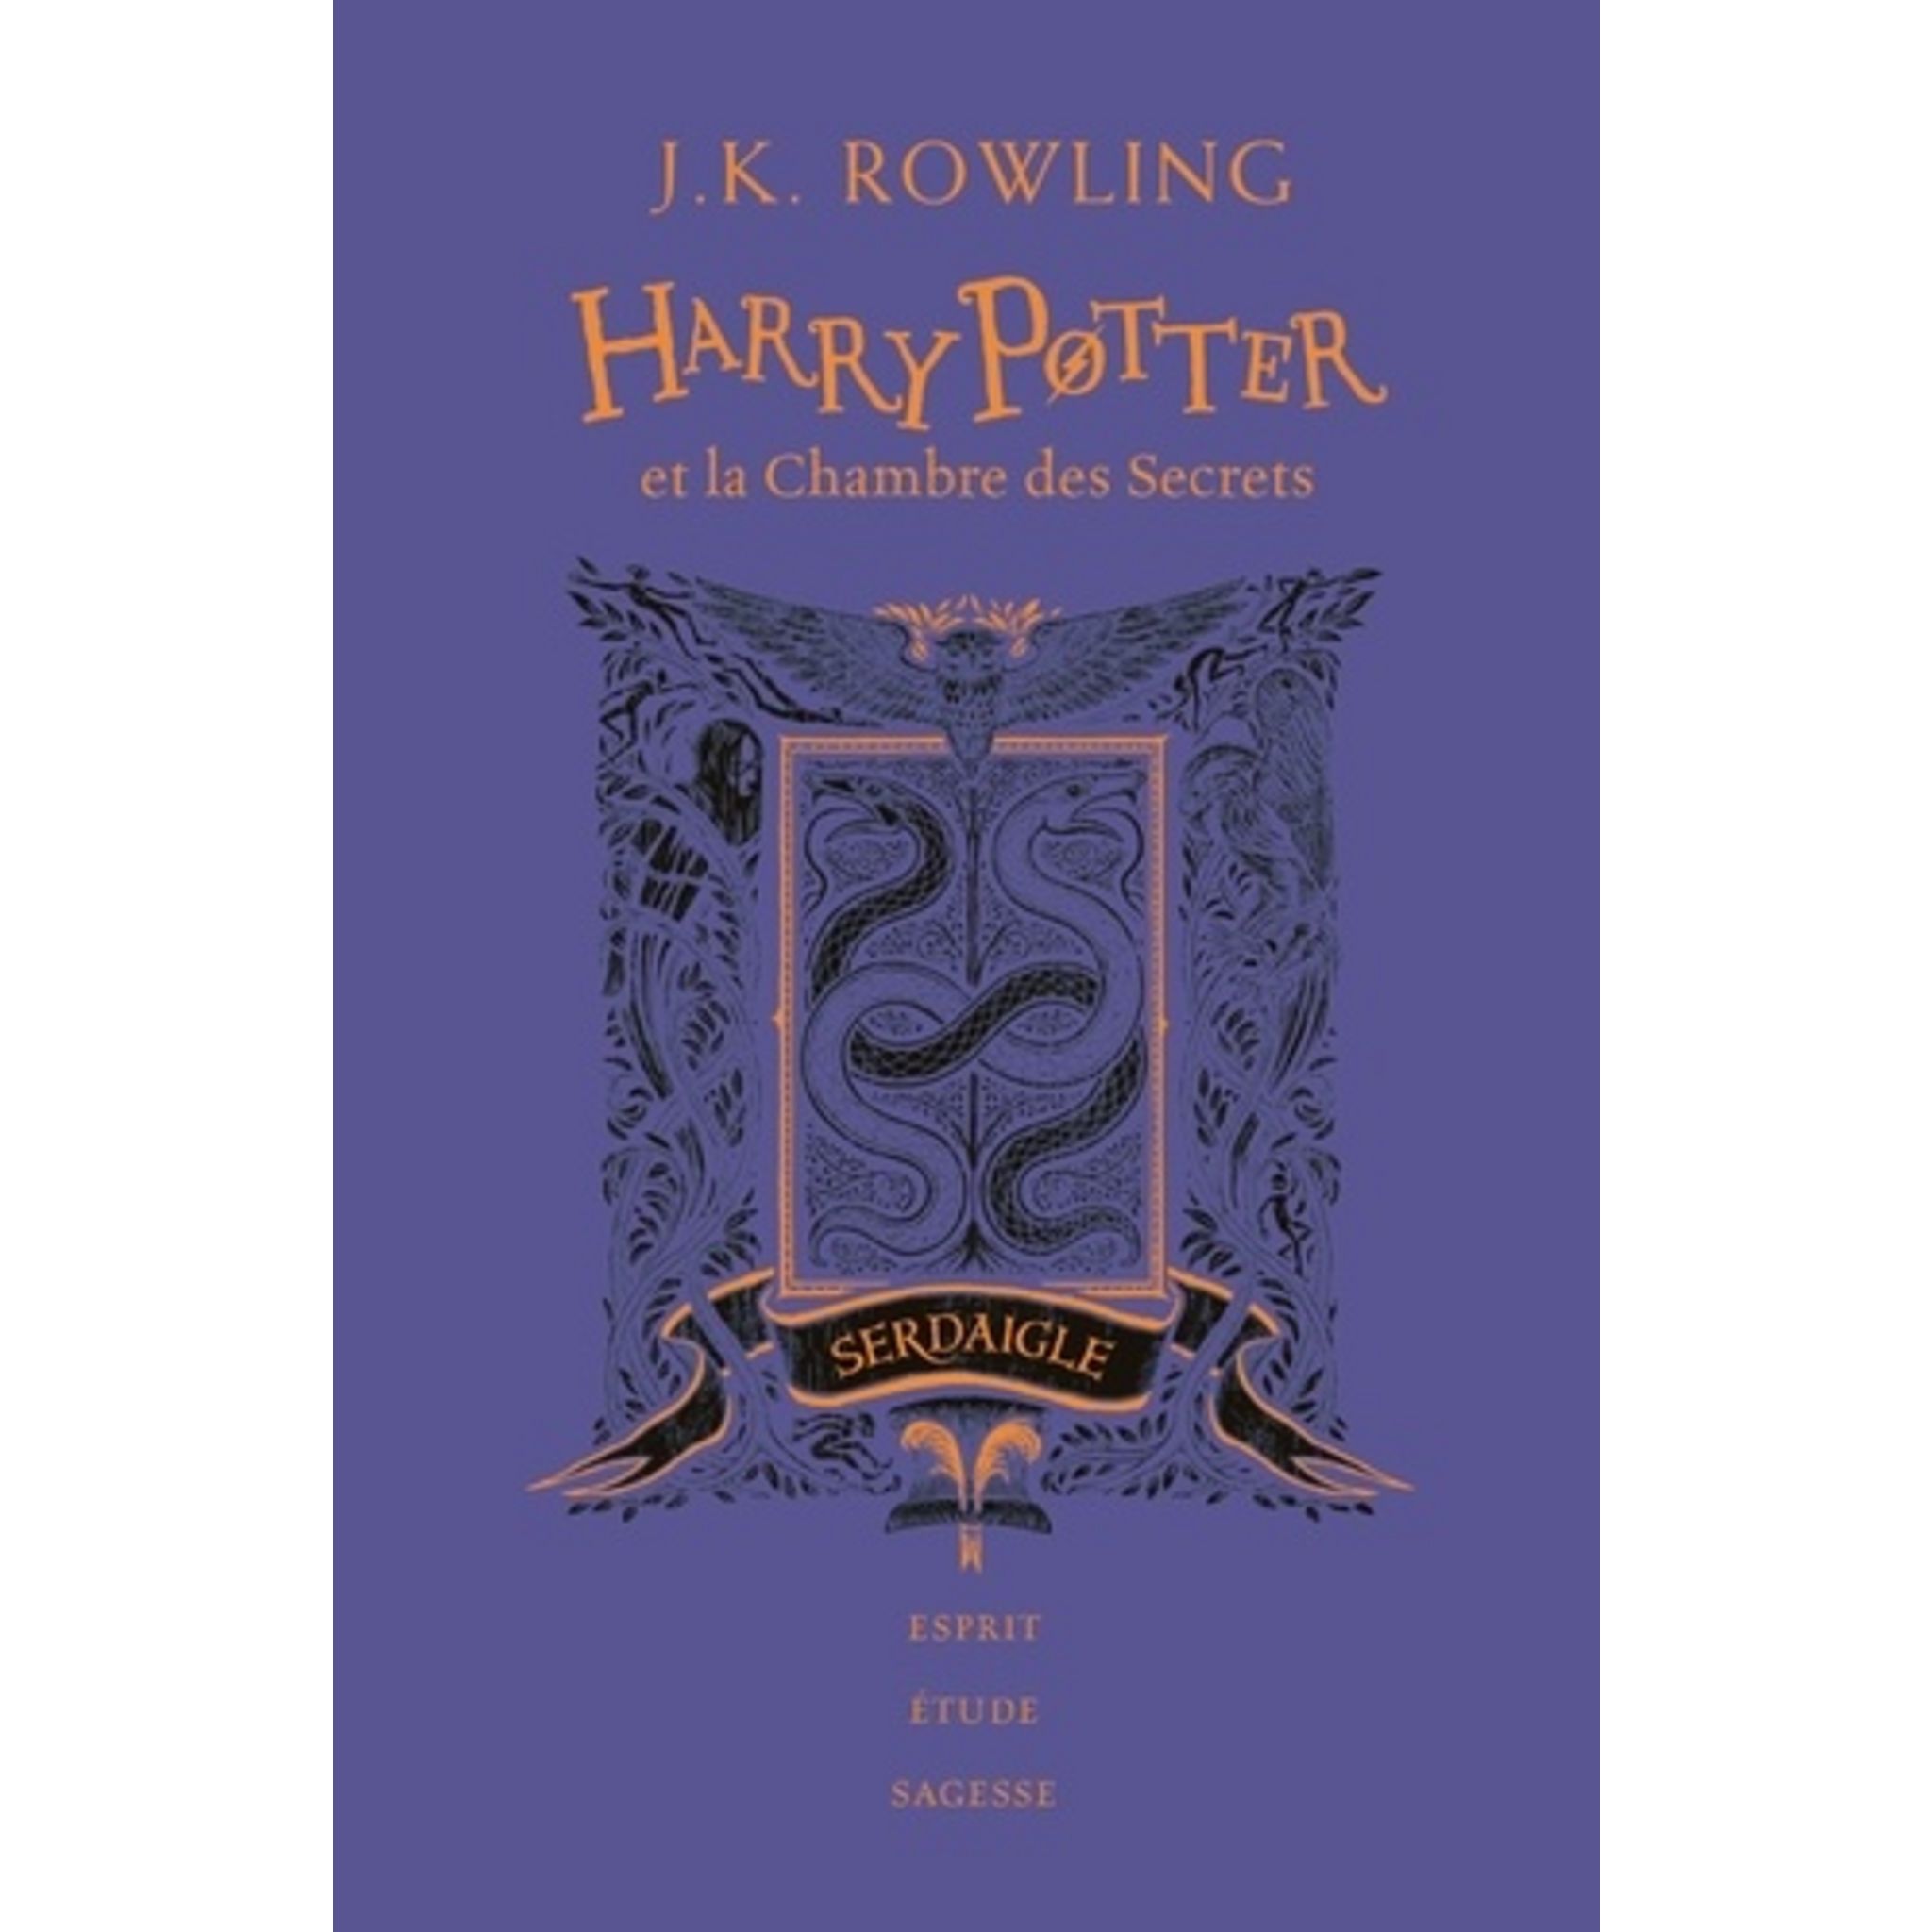 HARRY POTTER TOME 1 : HARRY POTTER A L'ECOLE DES SORCIERS (SERDAIGLE).  EDITION COLLECTOR 20E ANNIVERSAIRE, Rowling J.K. pas cher 